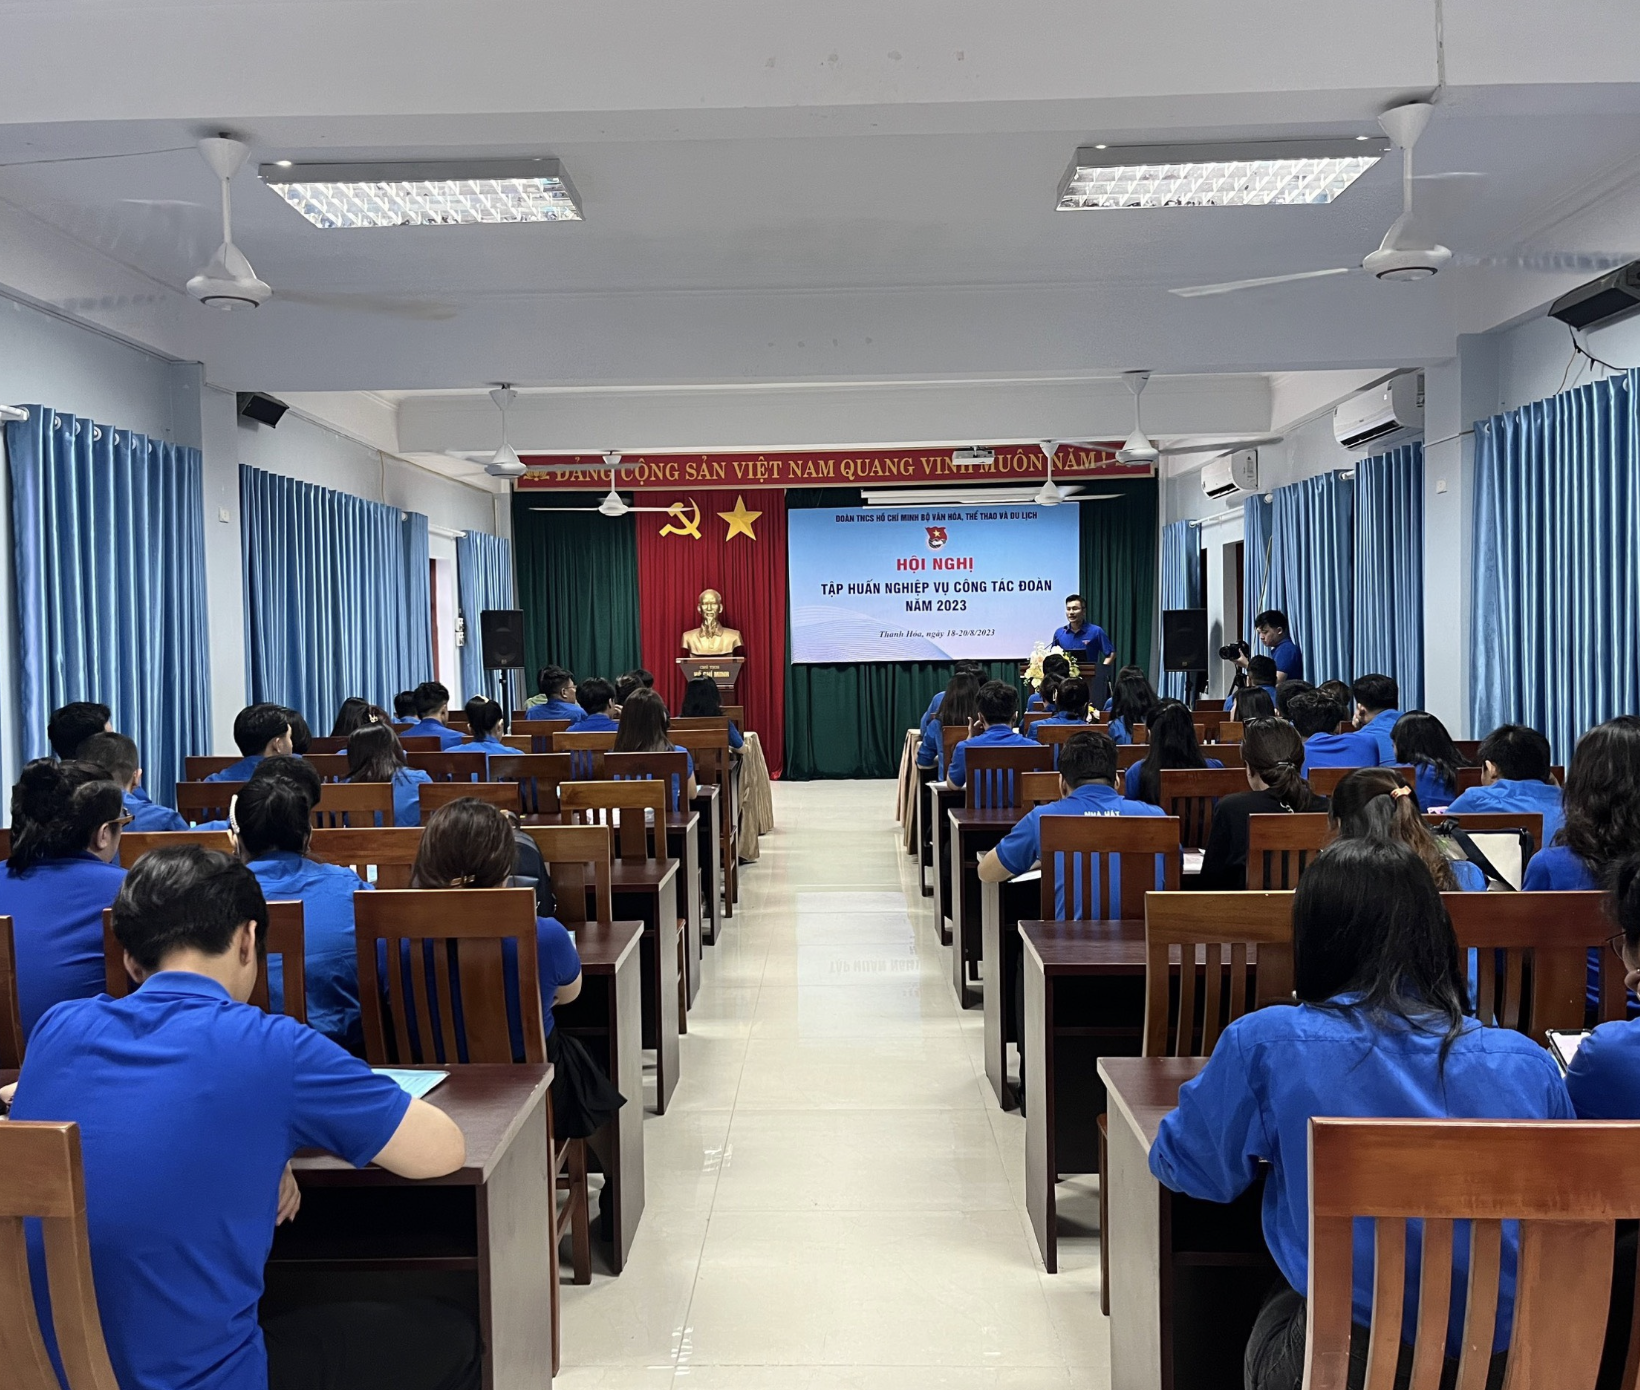 Chi đoàn thanh niên Cục Hợp tác Quốc tế tham gia chương trình tập huấn nghiệp vụ công tác Đoàn năm 2023 tại Thanh Hóa